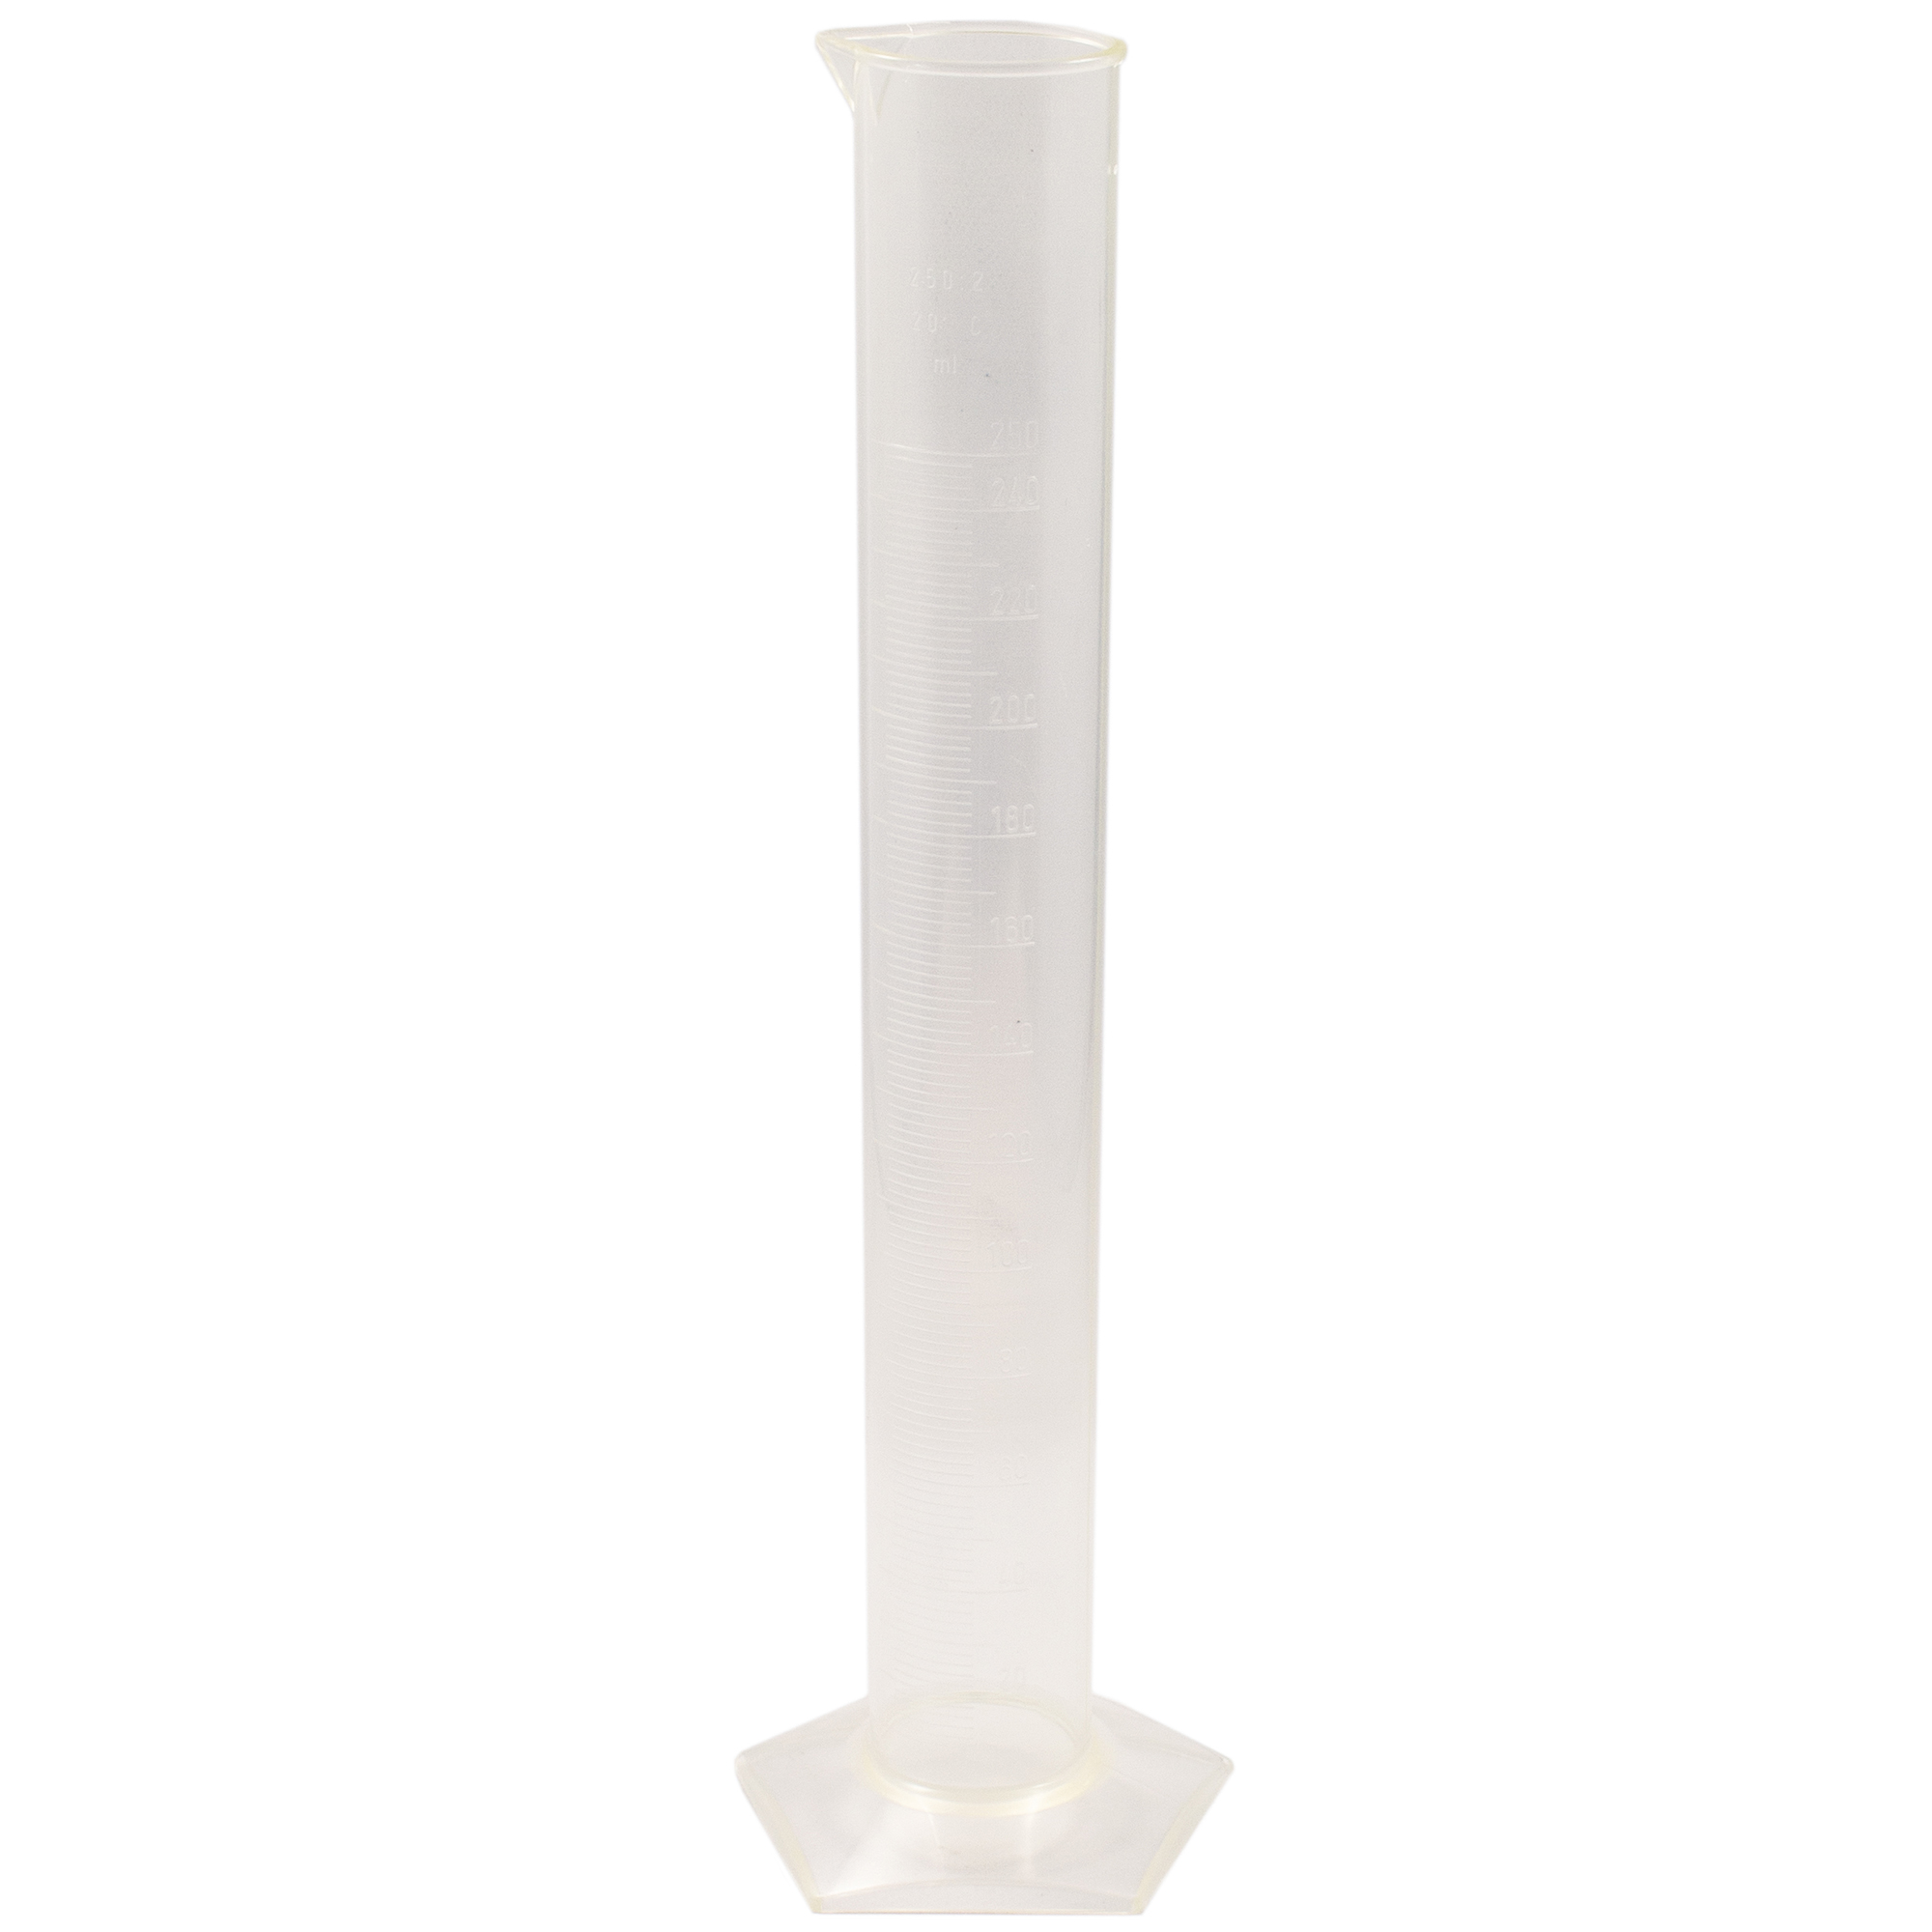 Measuring cylinder plastic (tpx) - 1 Ltr